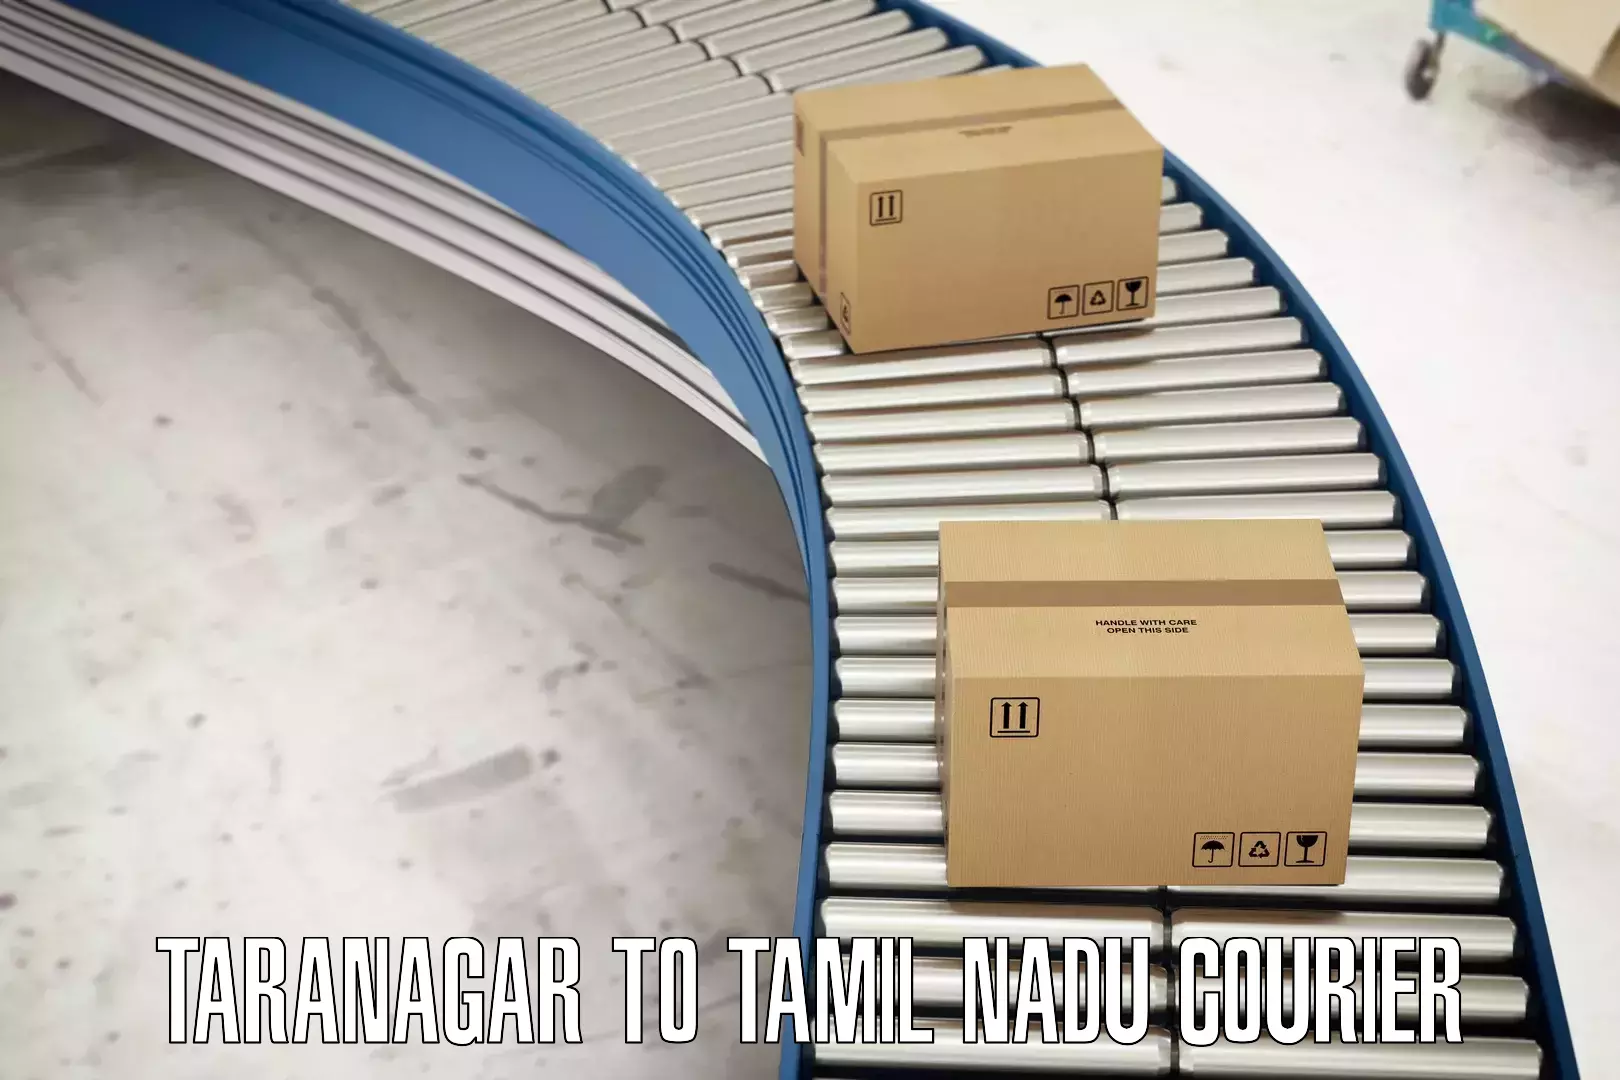 Smart courier technologies in Taranagar to Gobichettipalayam